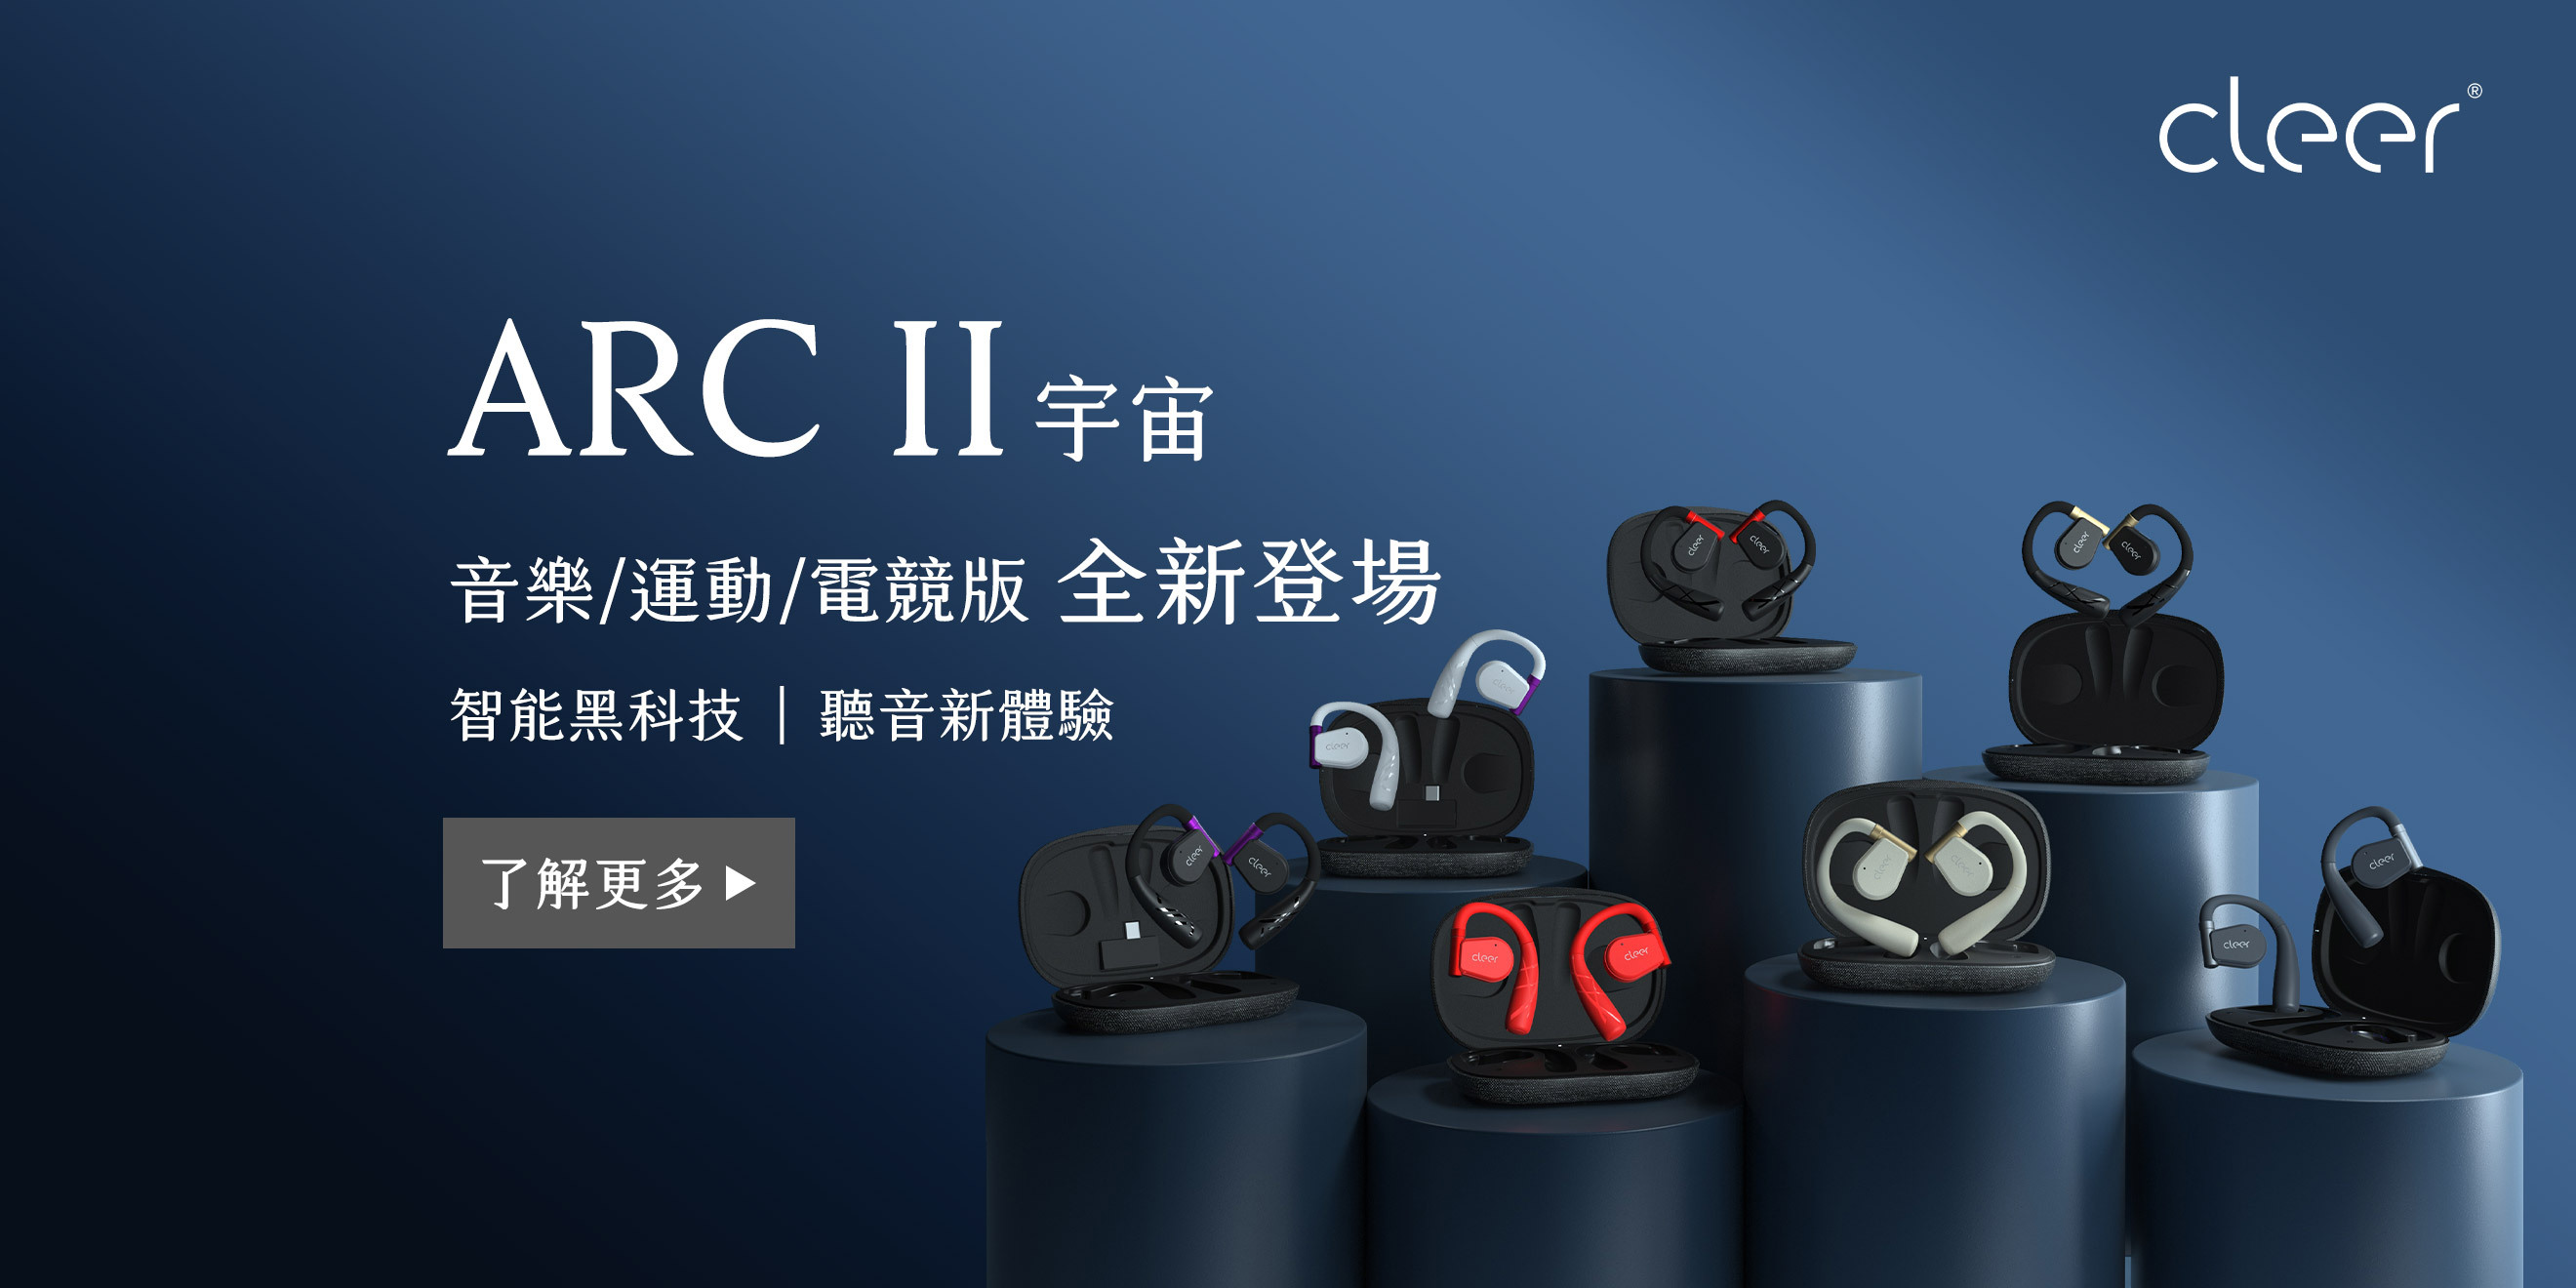 開放式無線耳機Cleer ARC II 預定7 月底陸續於台灣設置試聽點- 巴哈姆特